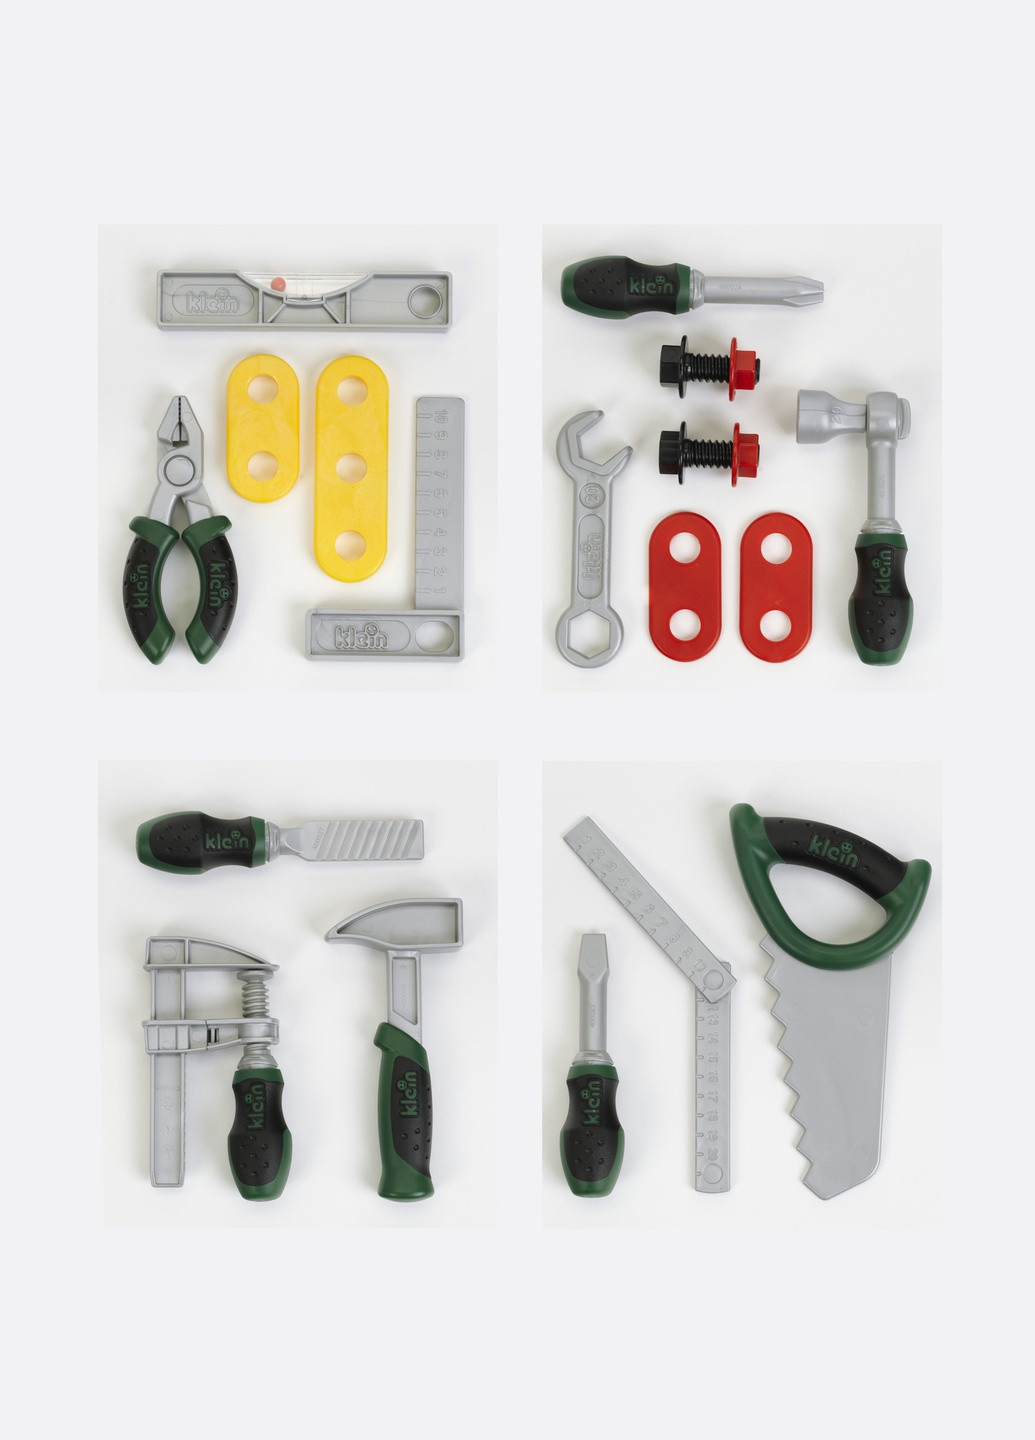 Іграшковий набір інструментів Klein 1 з 4х секцій 8007A (9016) Bosch (263433476)